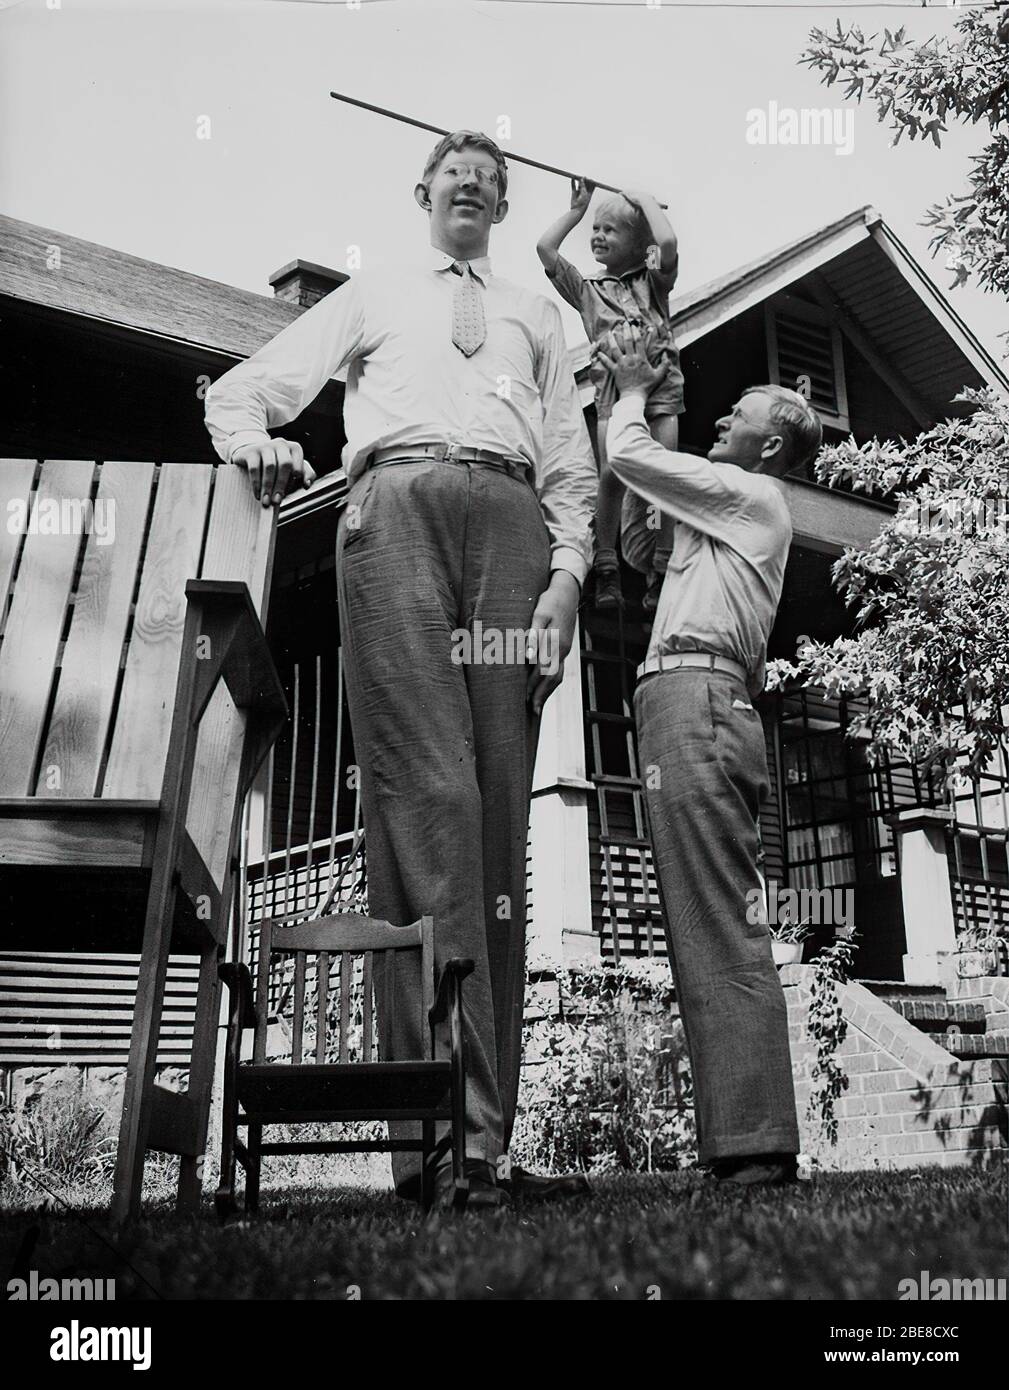 Le 22 février 1918, Robert Wadlow est né à Alton (USA). Le nourrisson était de taille moyenne et il n'y avait aucune indication que dans l'avenir il serait l'homme le plus haut du monde. À l'âge de 22 ans, il atteint une hauteur colossale de 272 cm. L'américain était également propriétaire des plus grands pieds de l'histoire. Ses chaussures étaient de taille 75 ! Banque D'Images